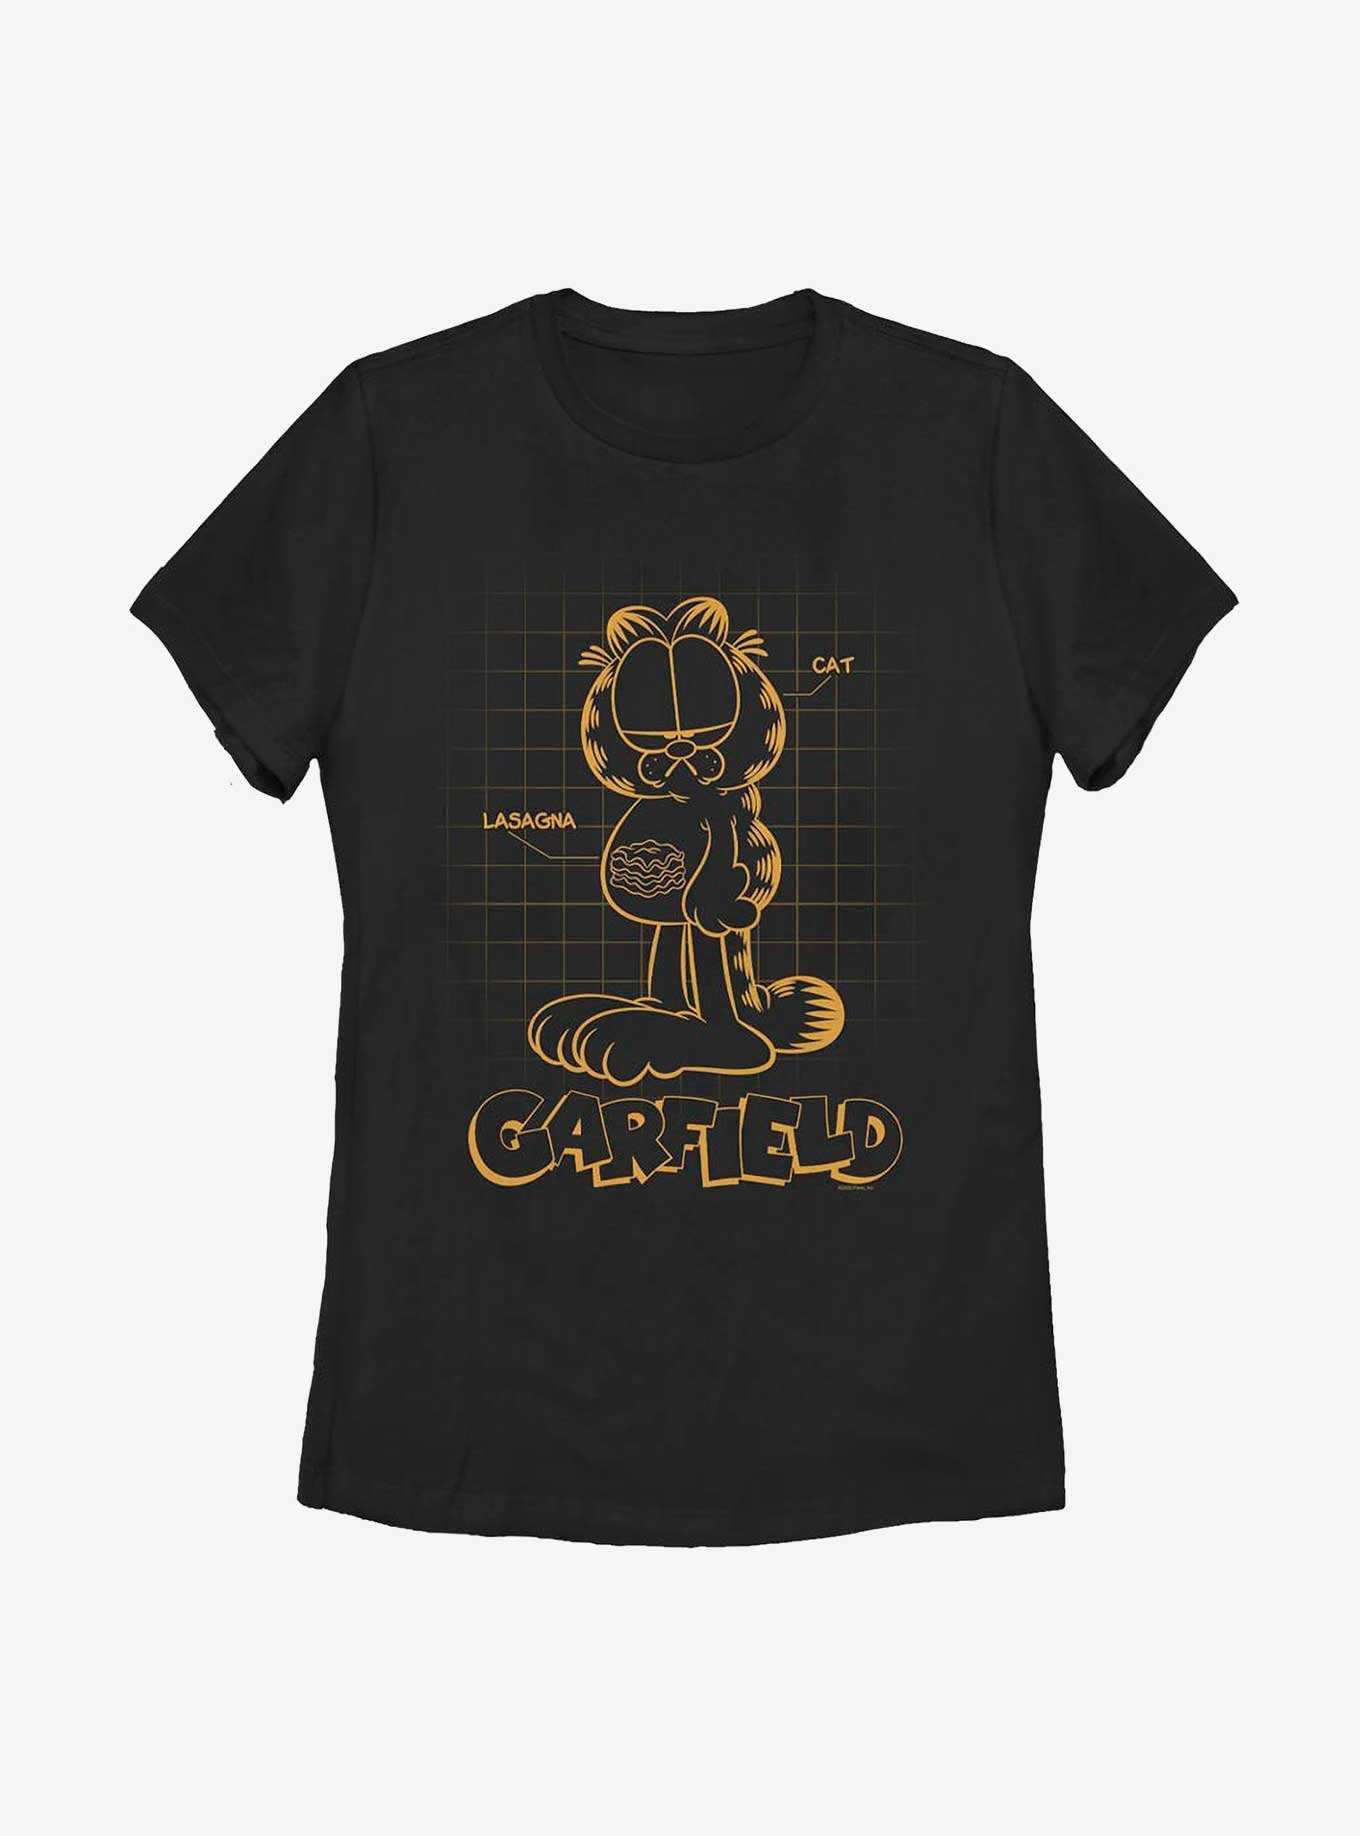 Garfield Cat Schematic Women's T-Shirt, , hi-res